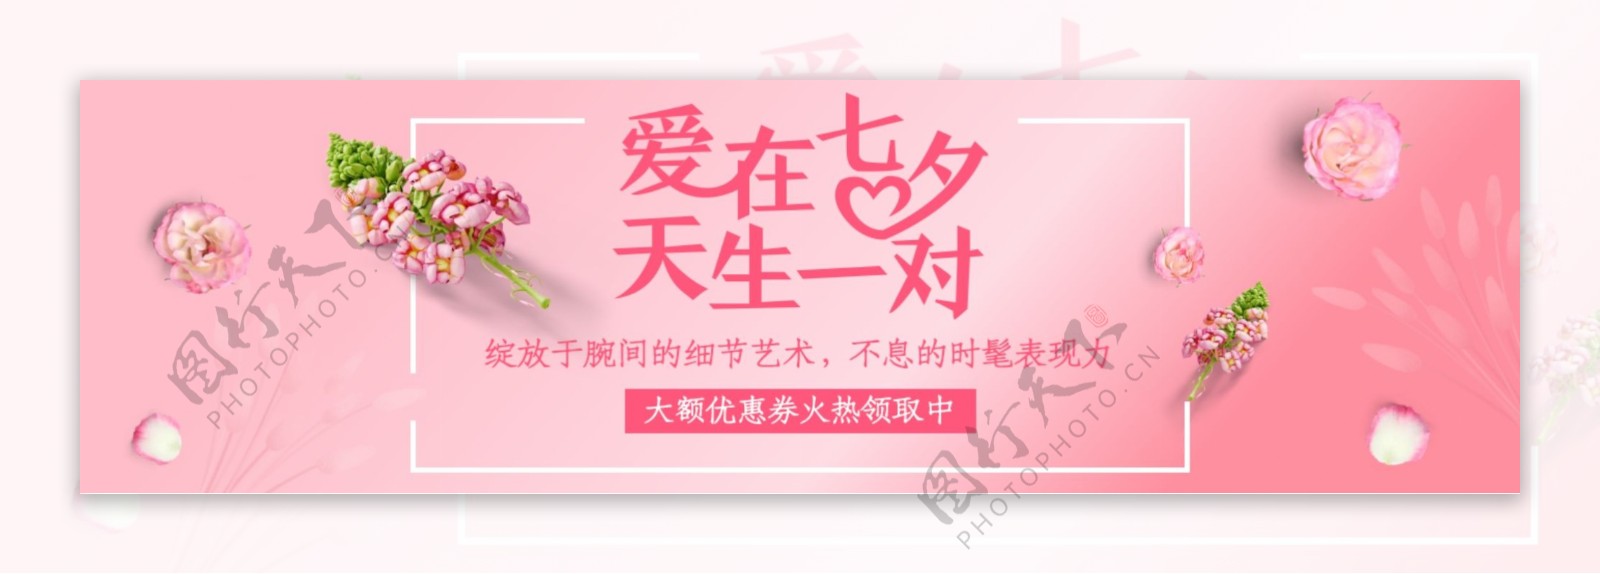 七夕传统节日活动banner